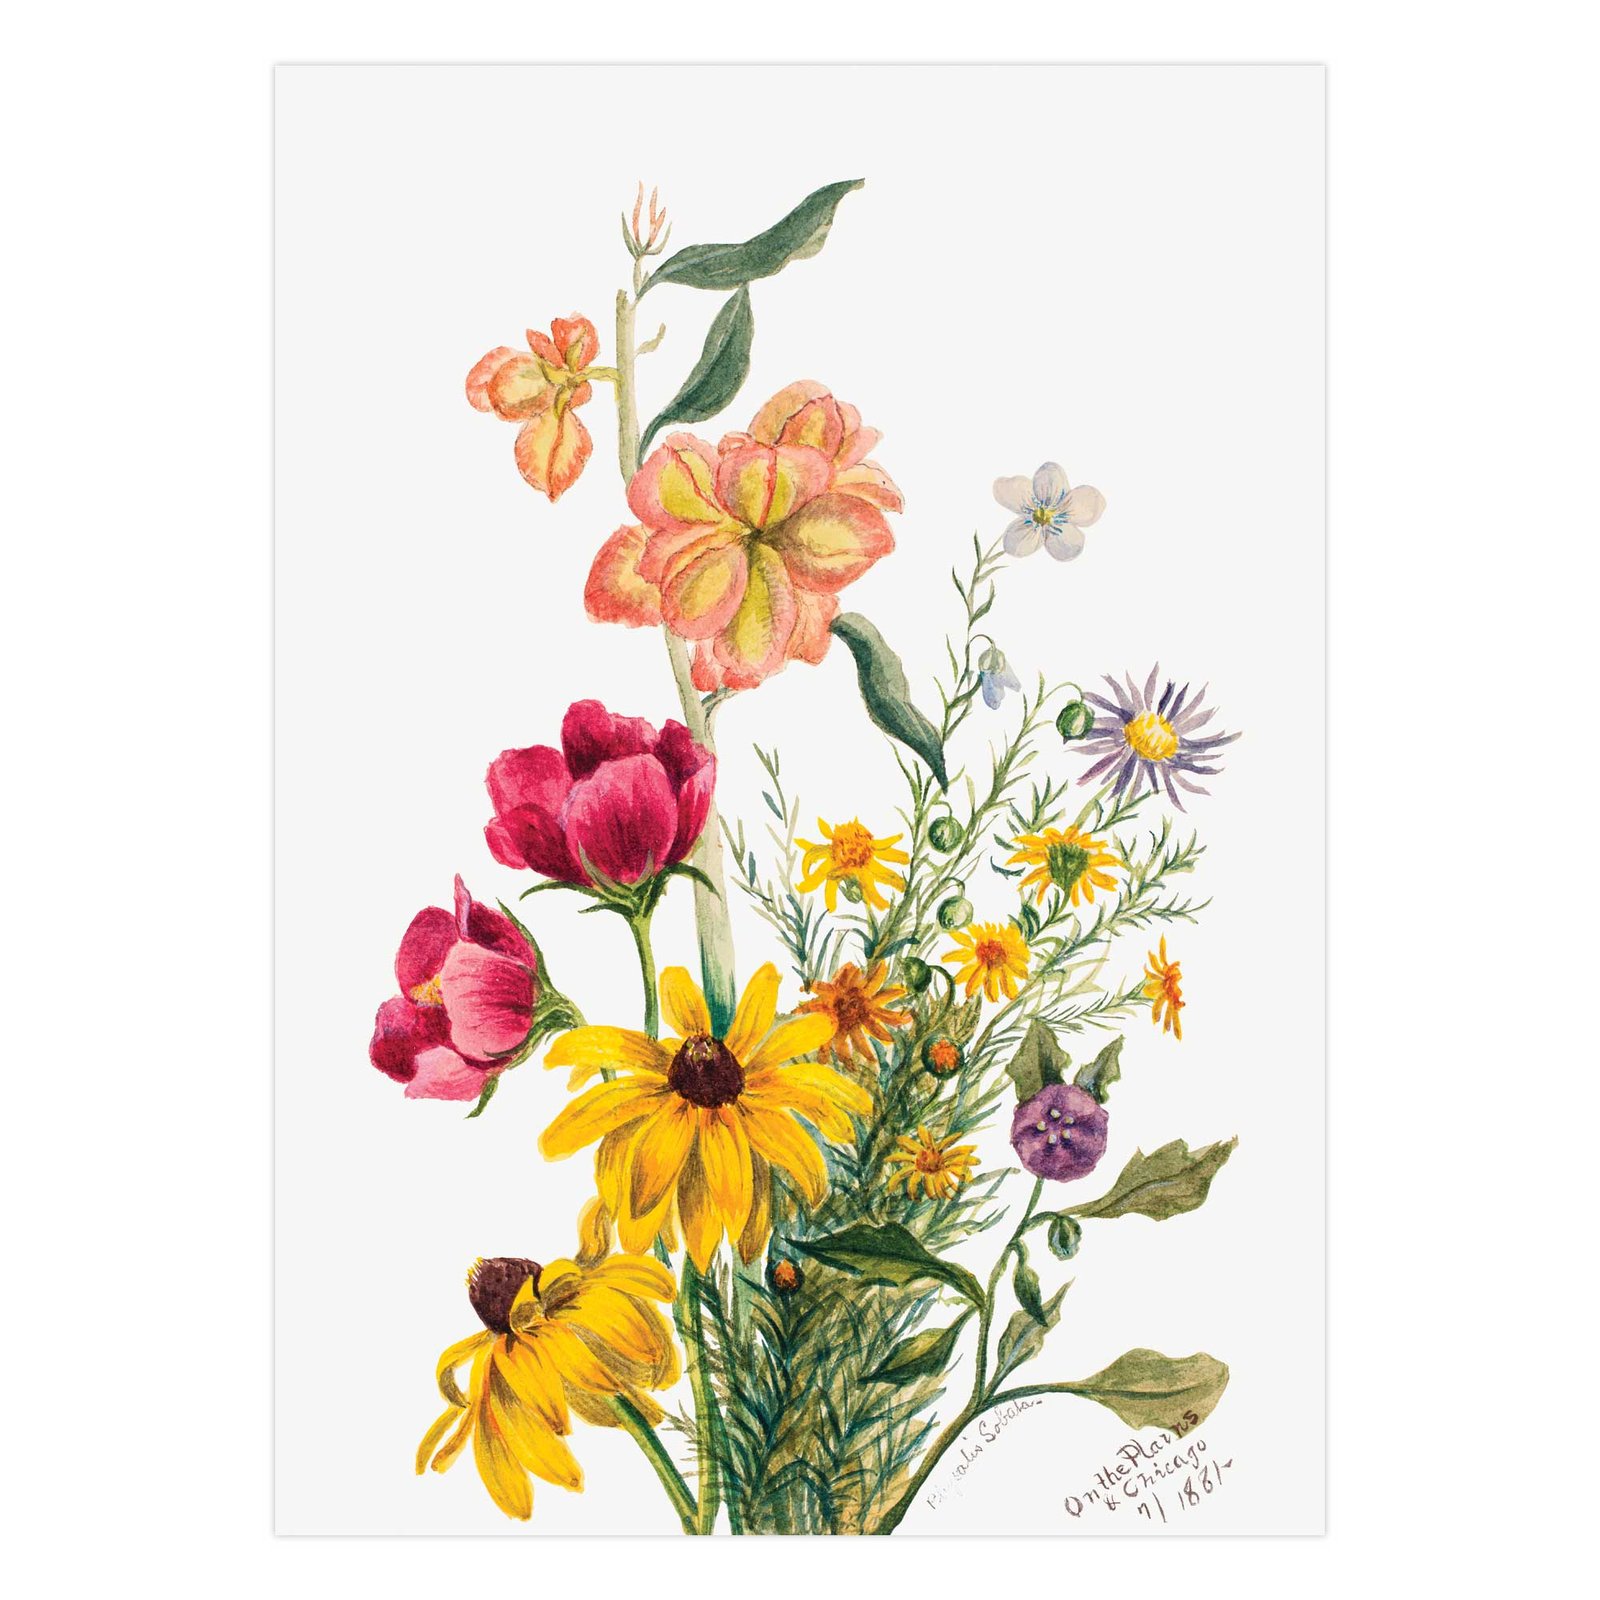 274- paveikslai internetu - Gėlių puokštė - Mary Vaux Walcott